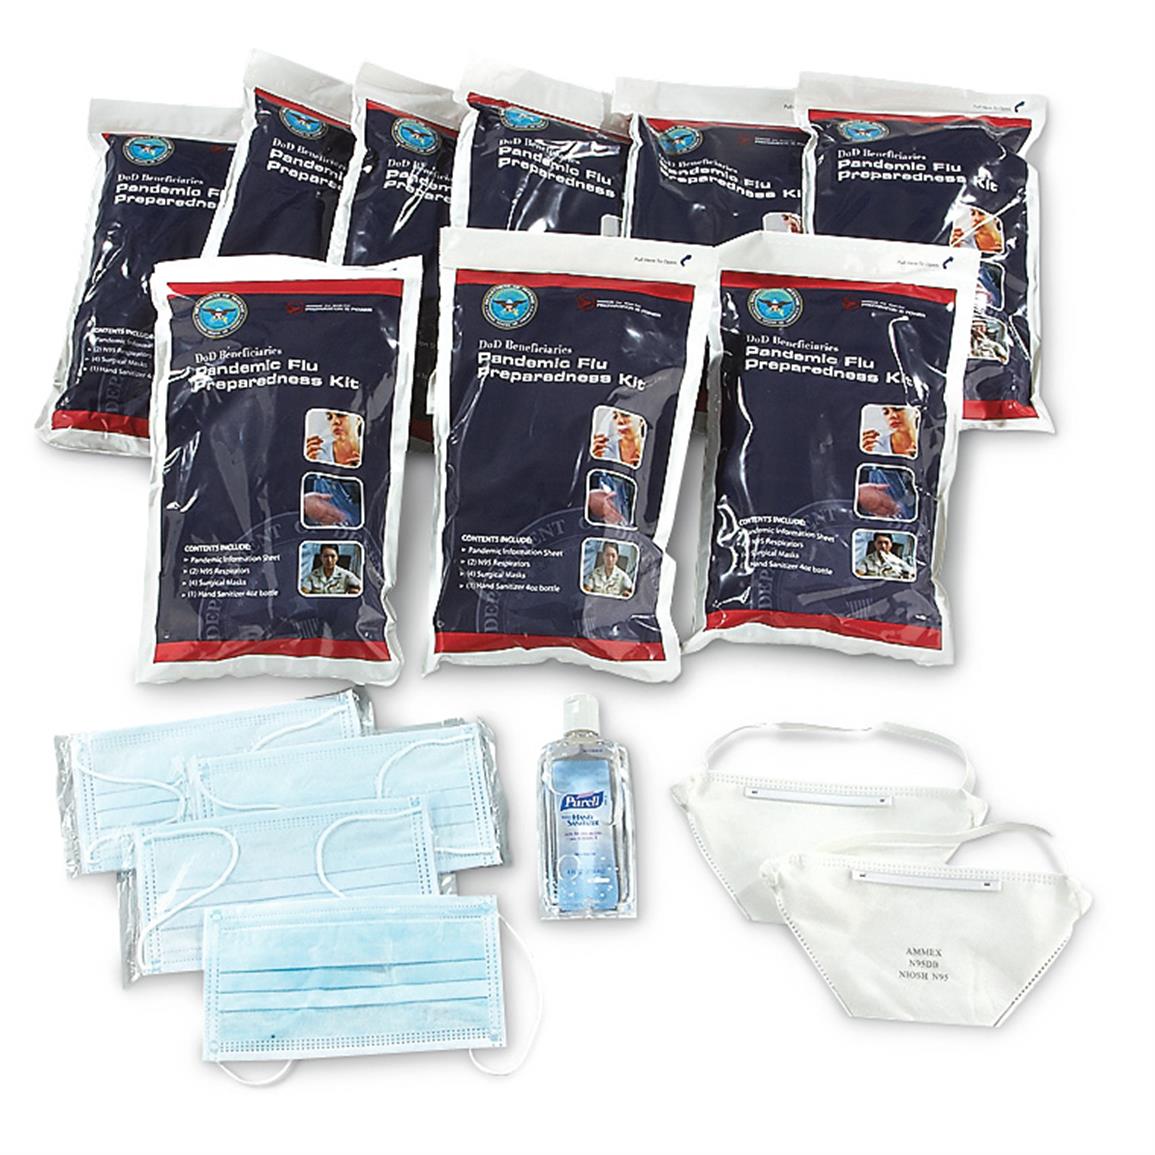 10-Pk. of Department of Defense Flu Pandemic Preparedness Kits